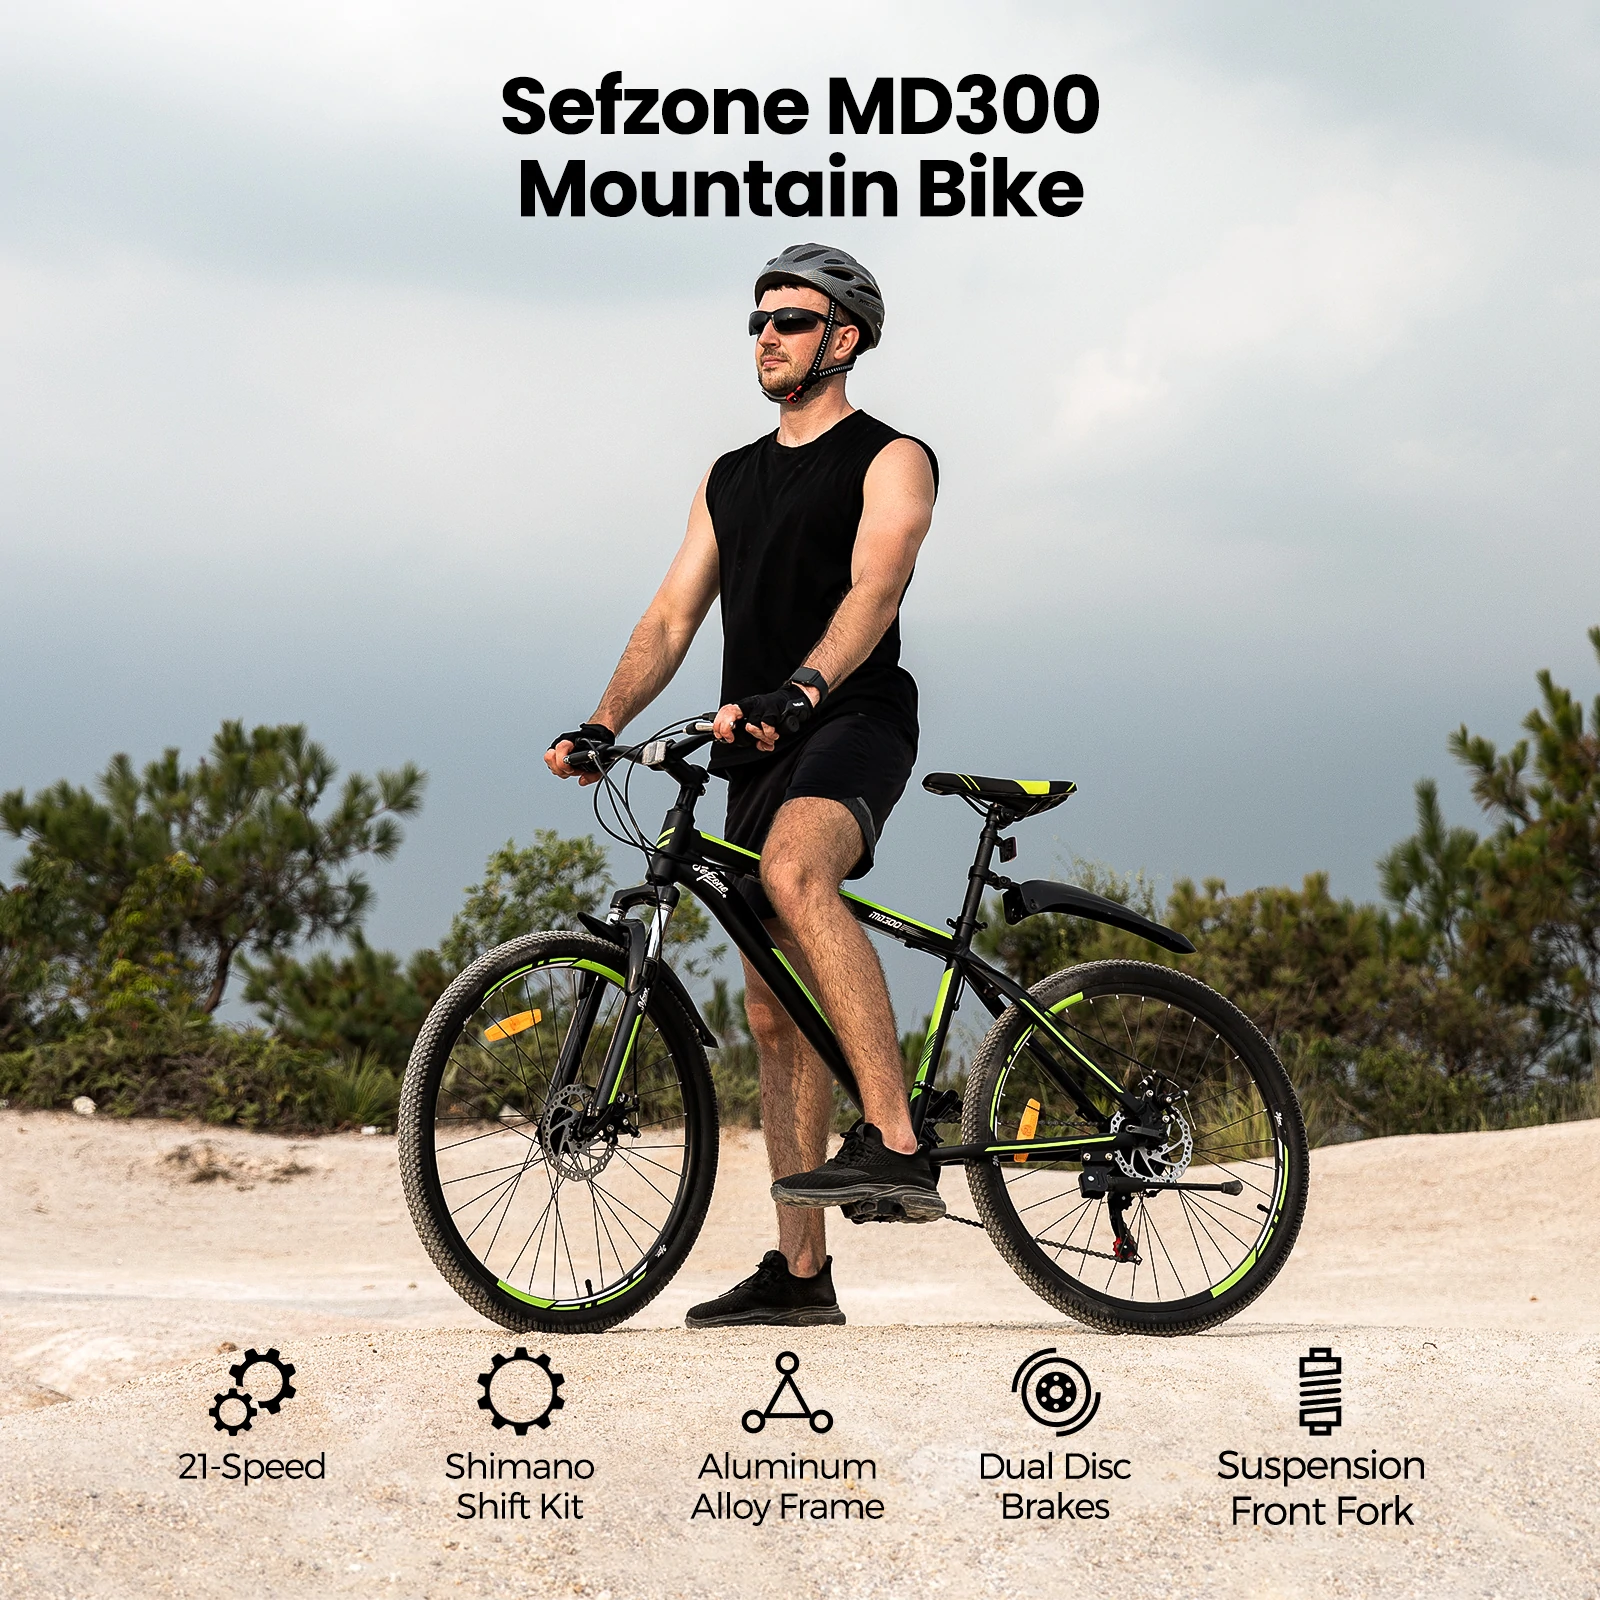 Сефзоне МД300 – бицикл за одрасле по цени дечијег бицикла